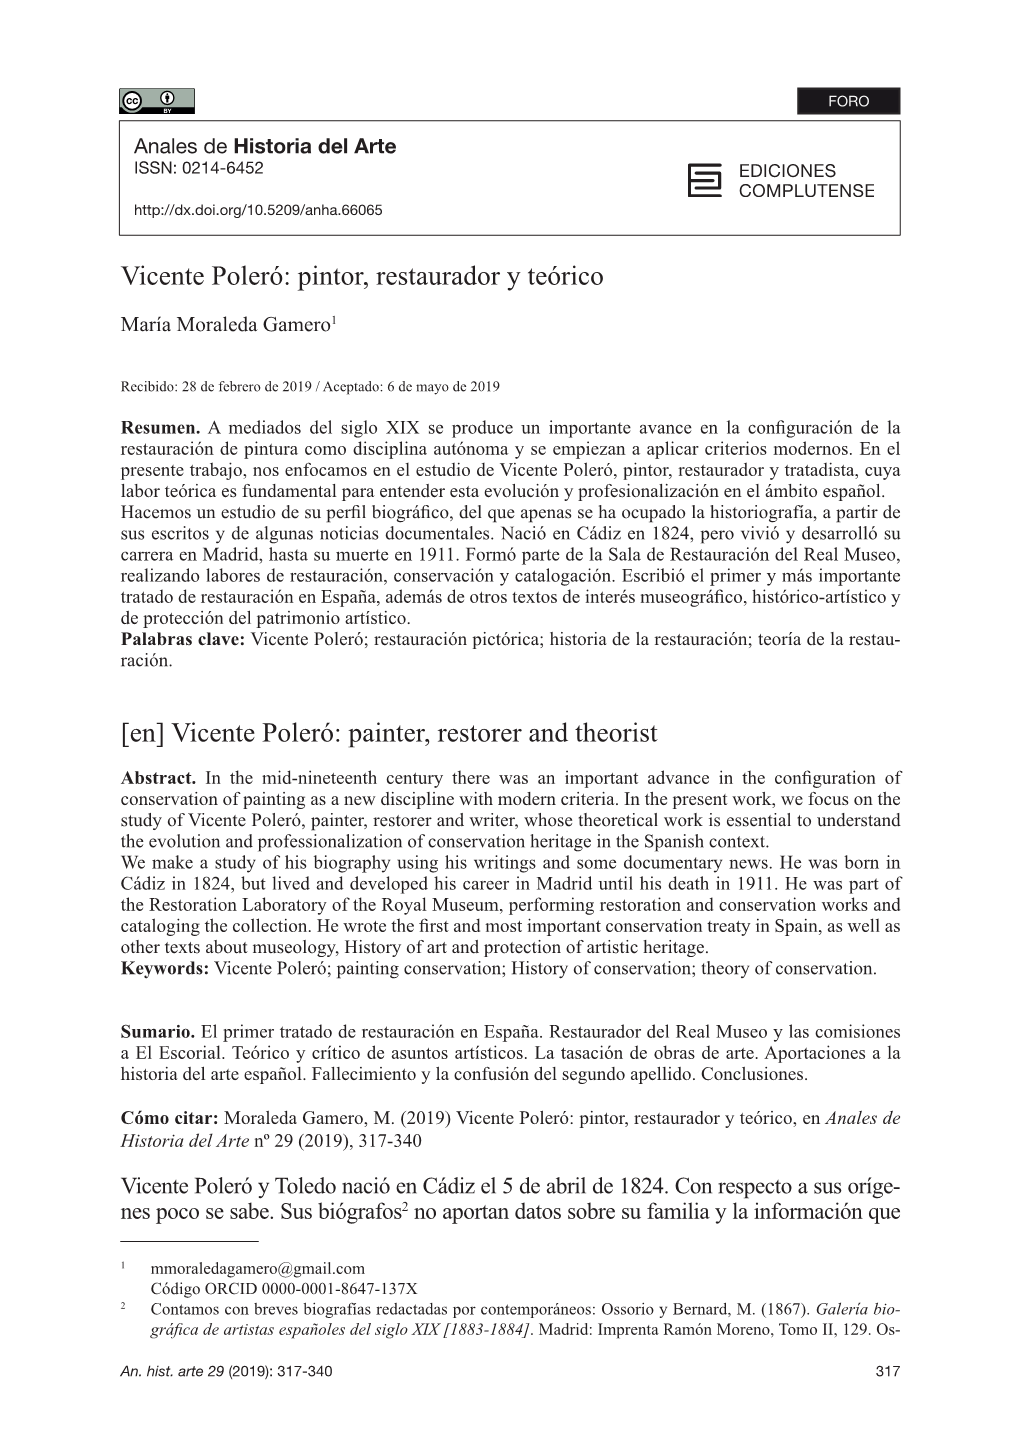 Vicente Poleró: Pintor, Restaurador Y Teórico